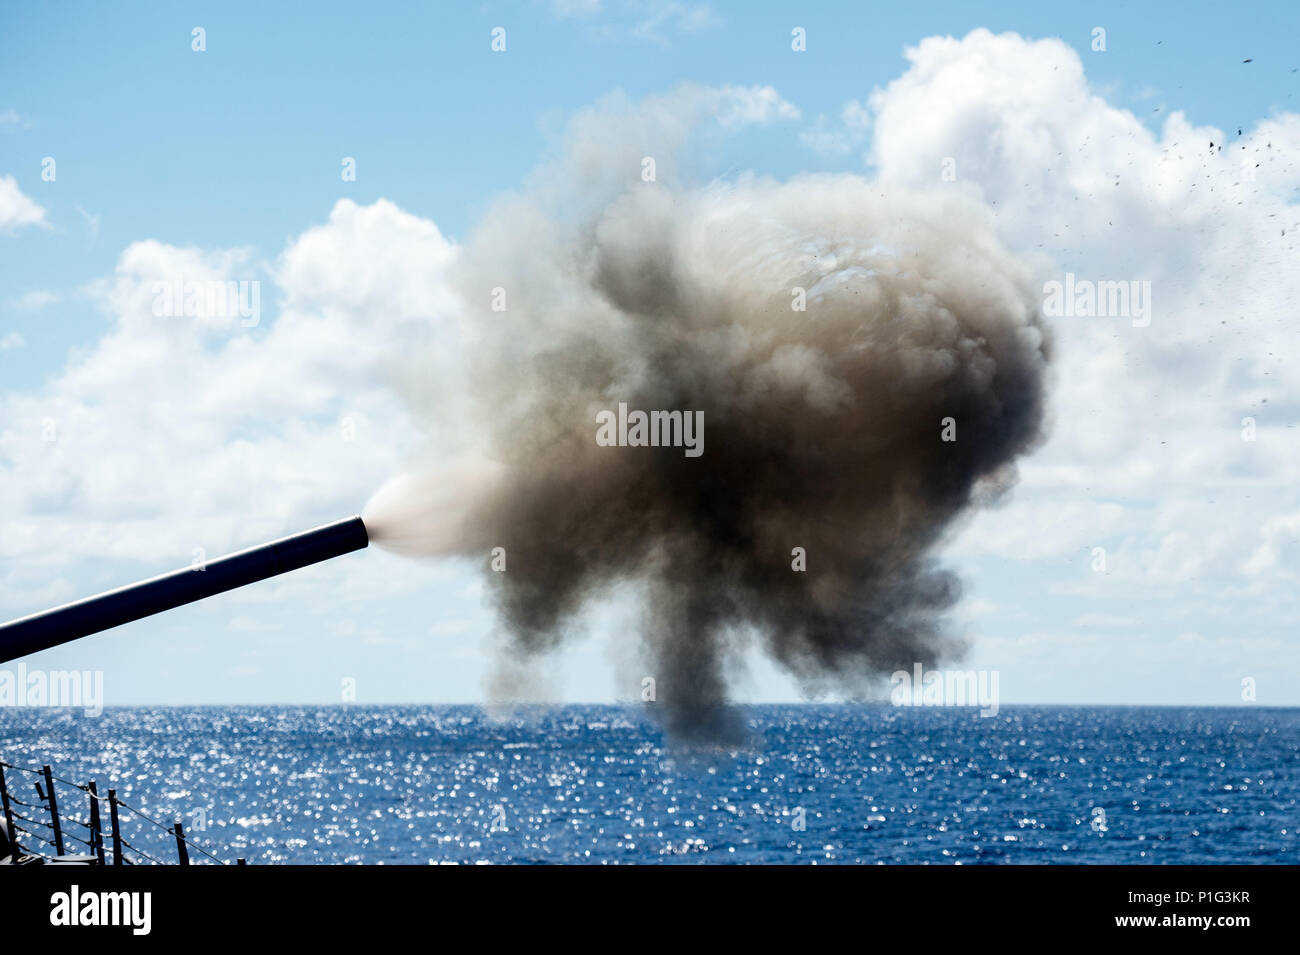 161026-N-NT265-768 Mare delle Filippine (ott. 26, 2016) La distribuita Arleigh Burke-class guidato-missile destroyer USS McCampbell (DDG 85), incendi il suo MK45 da 5 pollici pistola durante un live-fire esercitazione. McCampbell è di pattuglia con un Carrier Strike gruppo cinque (CSG 5) di supporto di sicurezza e stabilità nella Indo-Asia-regione del Pacifico. (U.S. Navy foto di Sottufficiali di seconda classe Senyk cristiana/rilasciato) Foto Stock